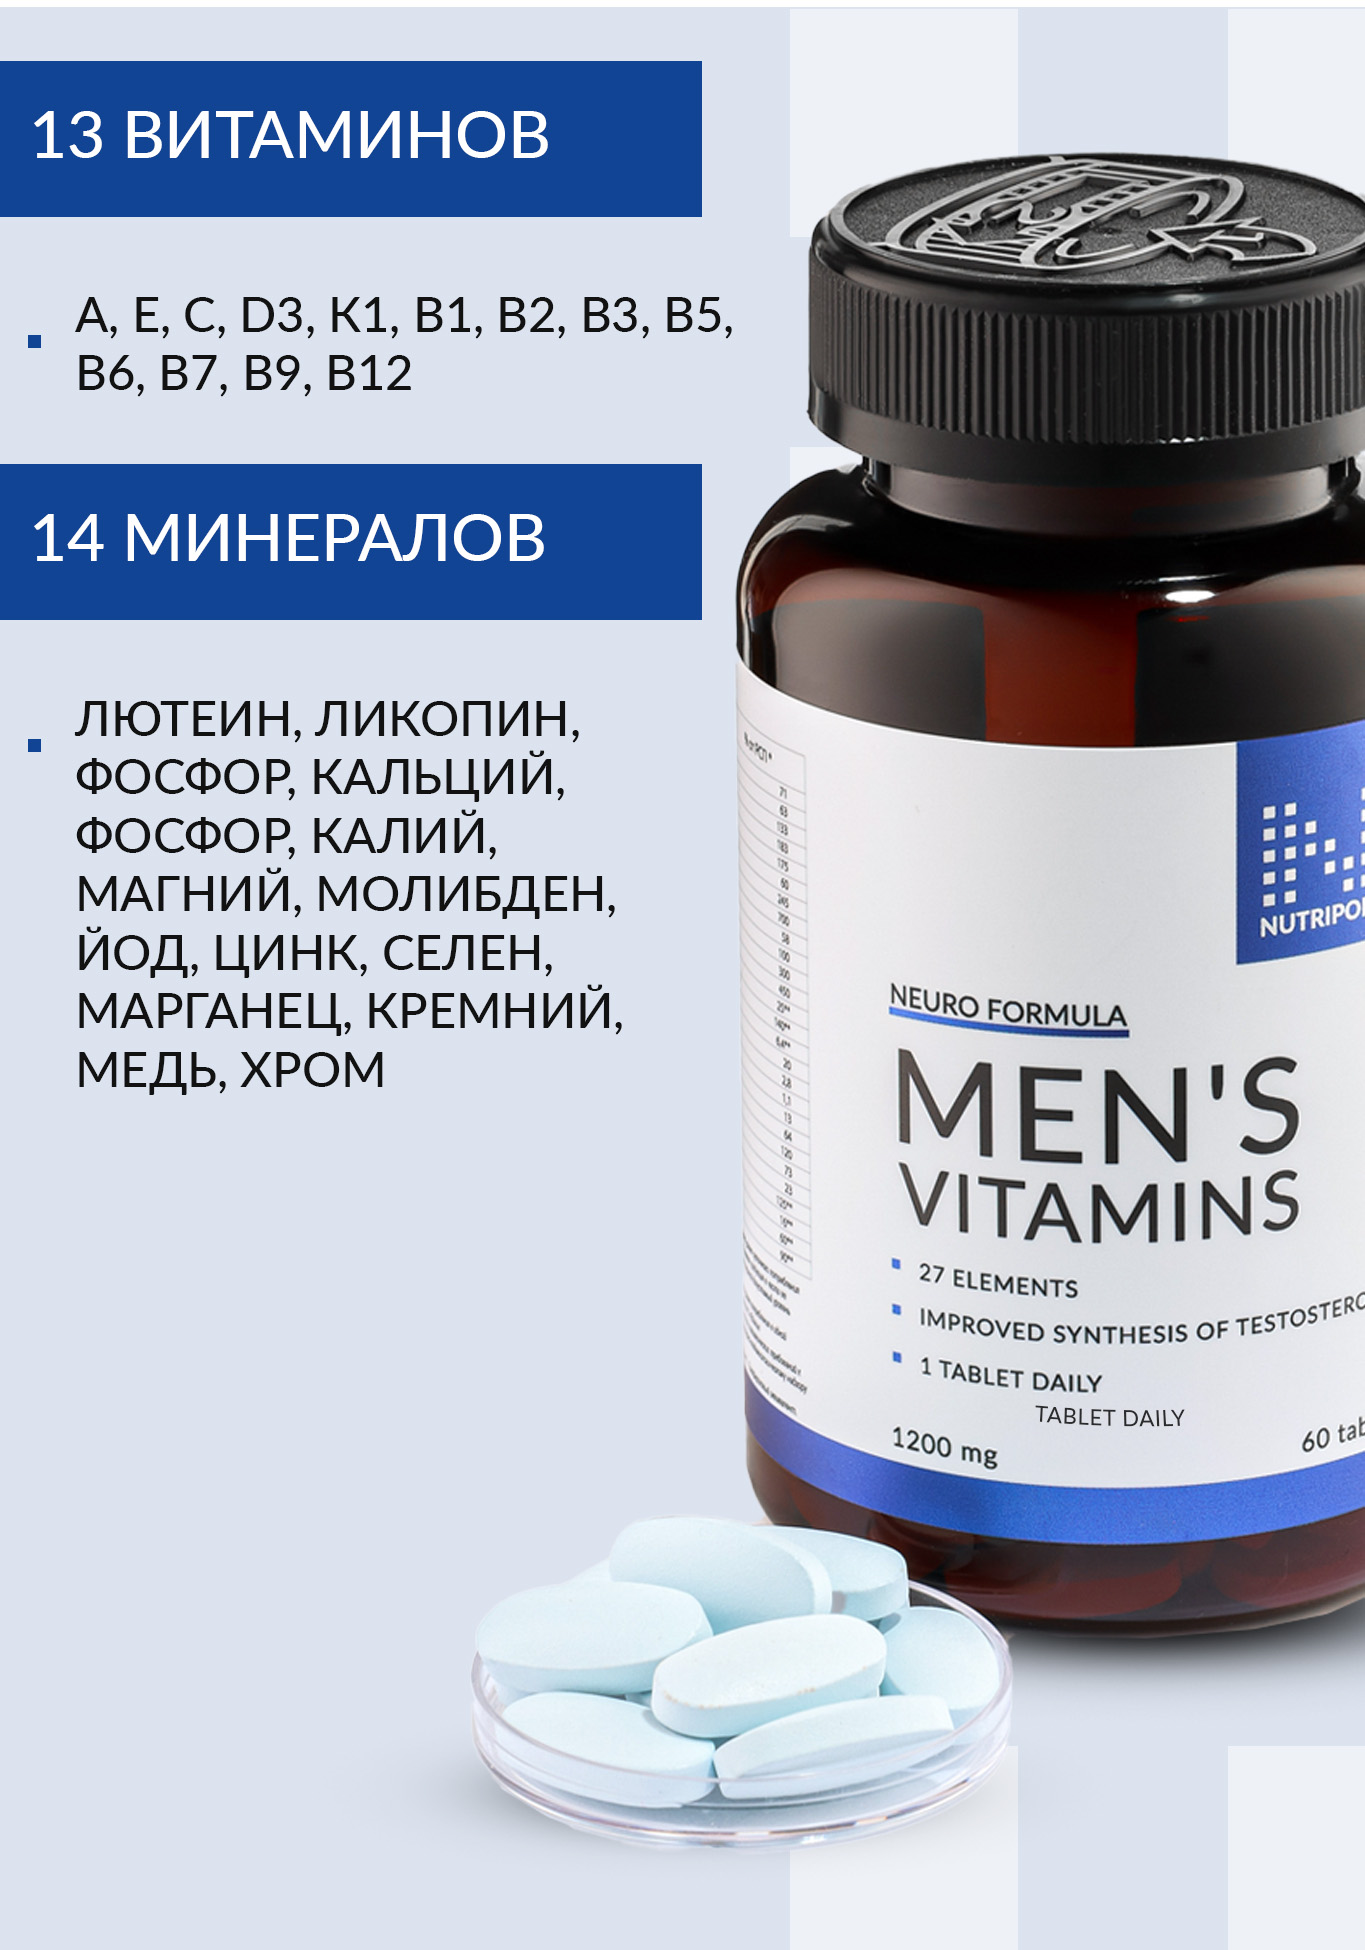 Men vitamin`s (Витамины для мужчин) NUTRIPOLIS - фото 4